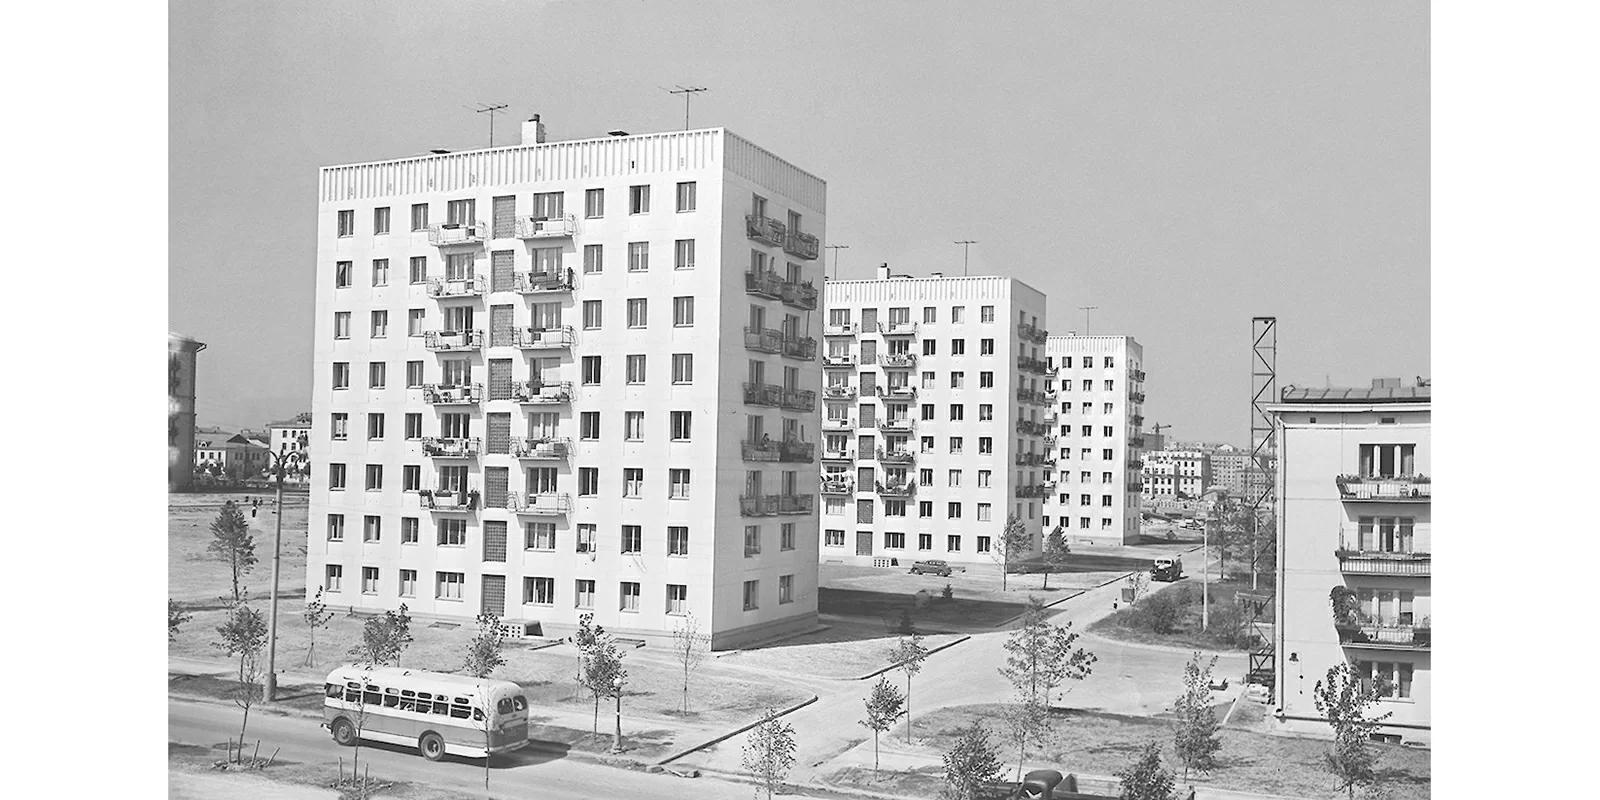 Главархив рассказал историю строительства панельных домов в Москве